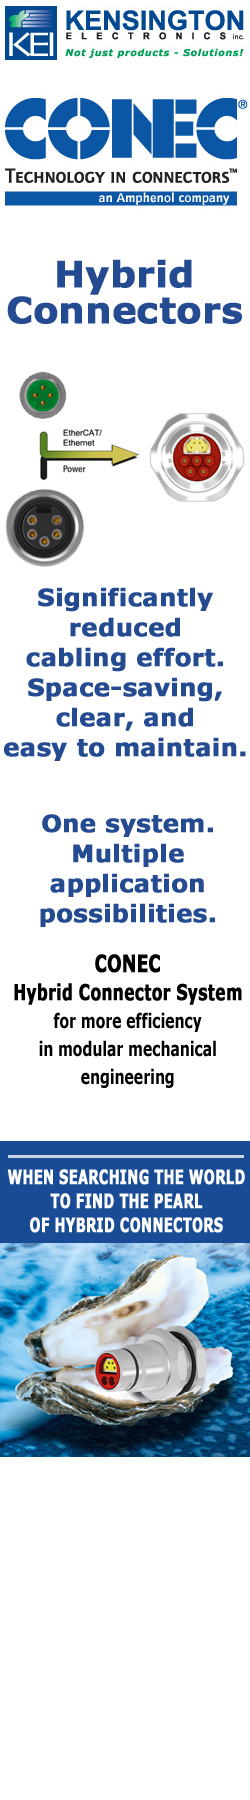 CONEC Hybrid Connector Series